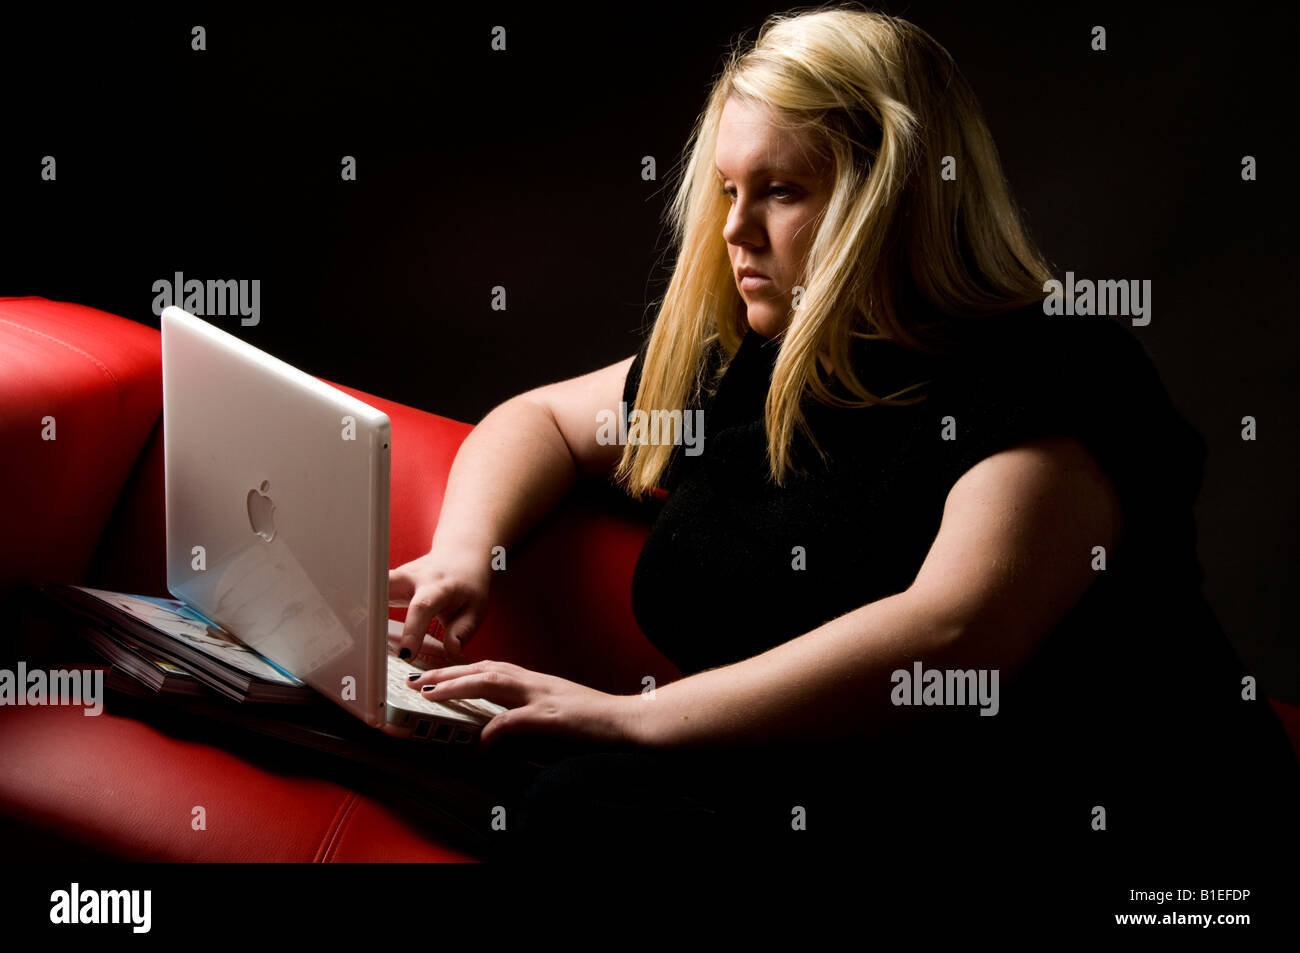 blonde junge Frau, die Arbeit an ihrem weißen Apple Mac iBook-Laptop-Computer sitzt auf einem roten Sofa, das Abrufen von e-Mails über internet Stockfoto